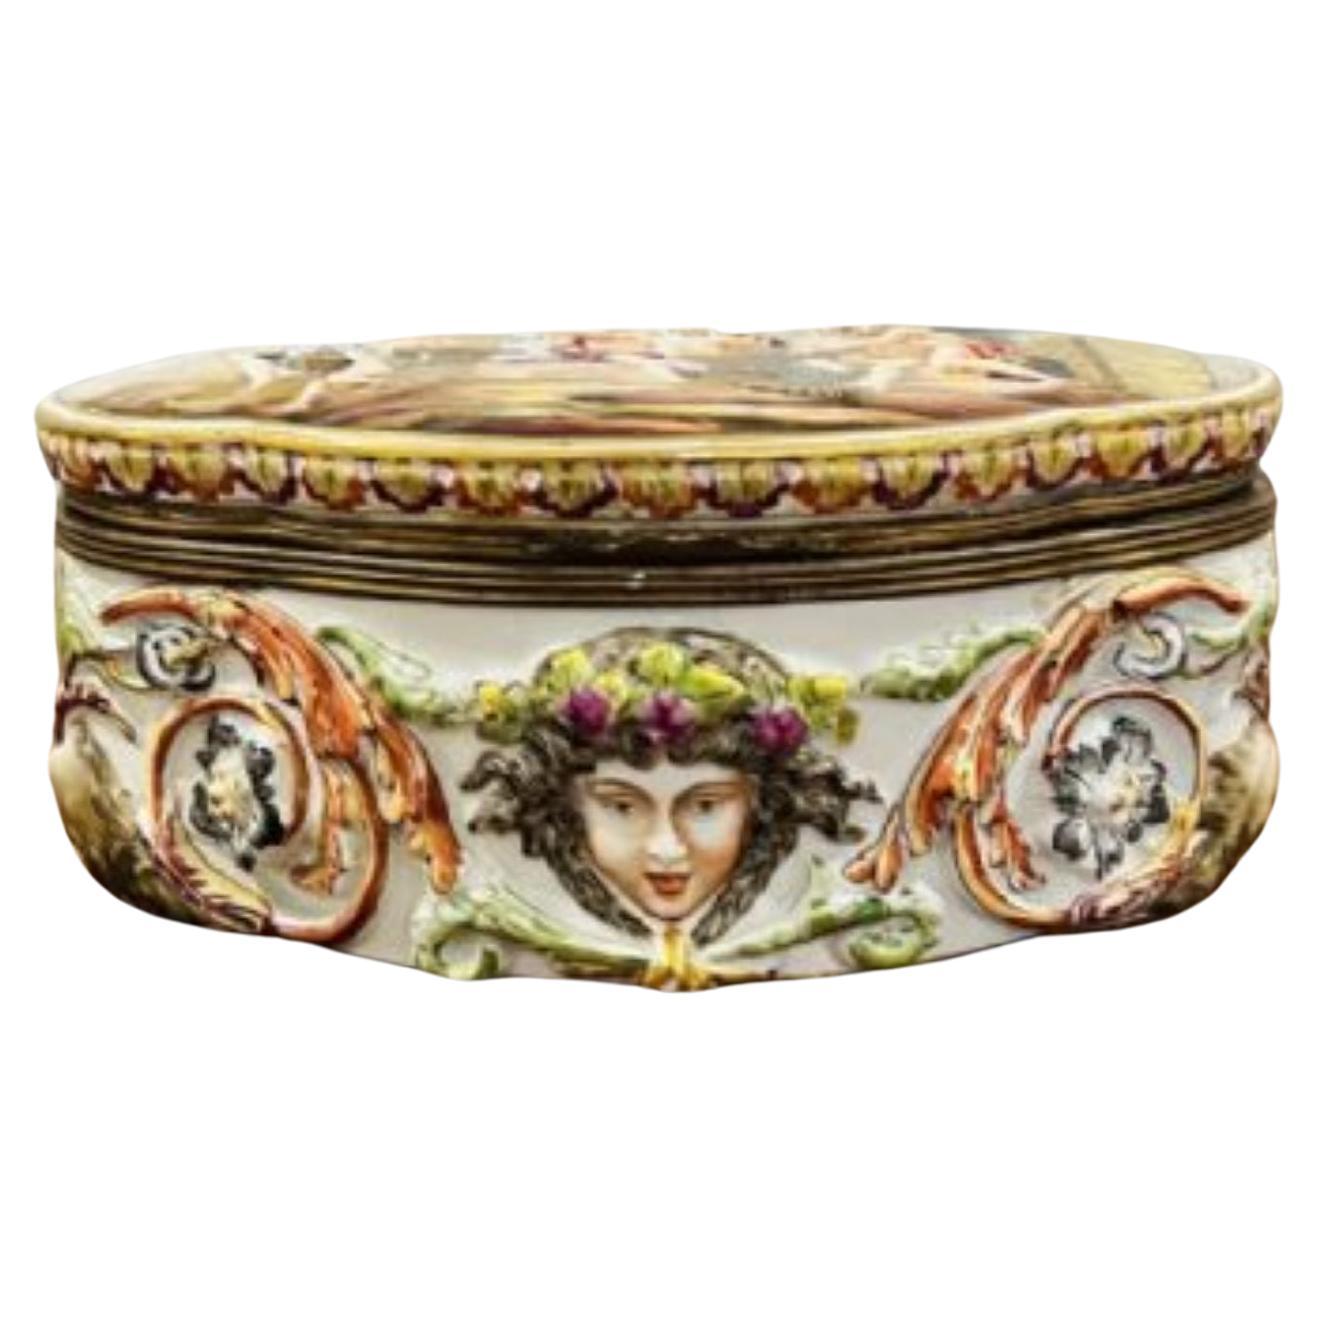 Quality antique Victorian Italian Capodimonte porcelain table casket  For Sale